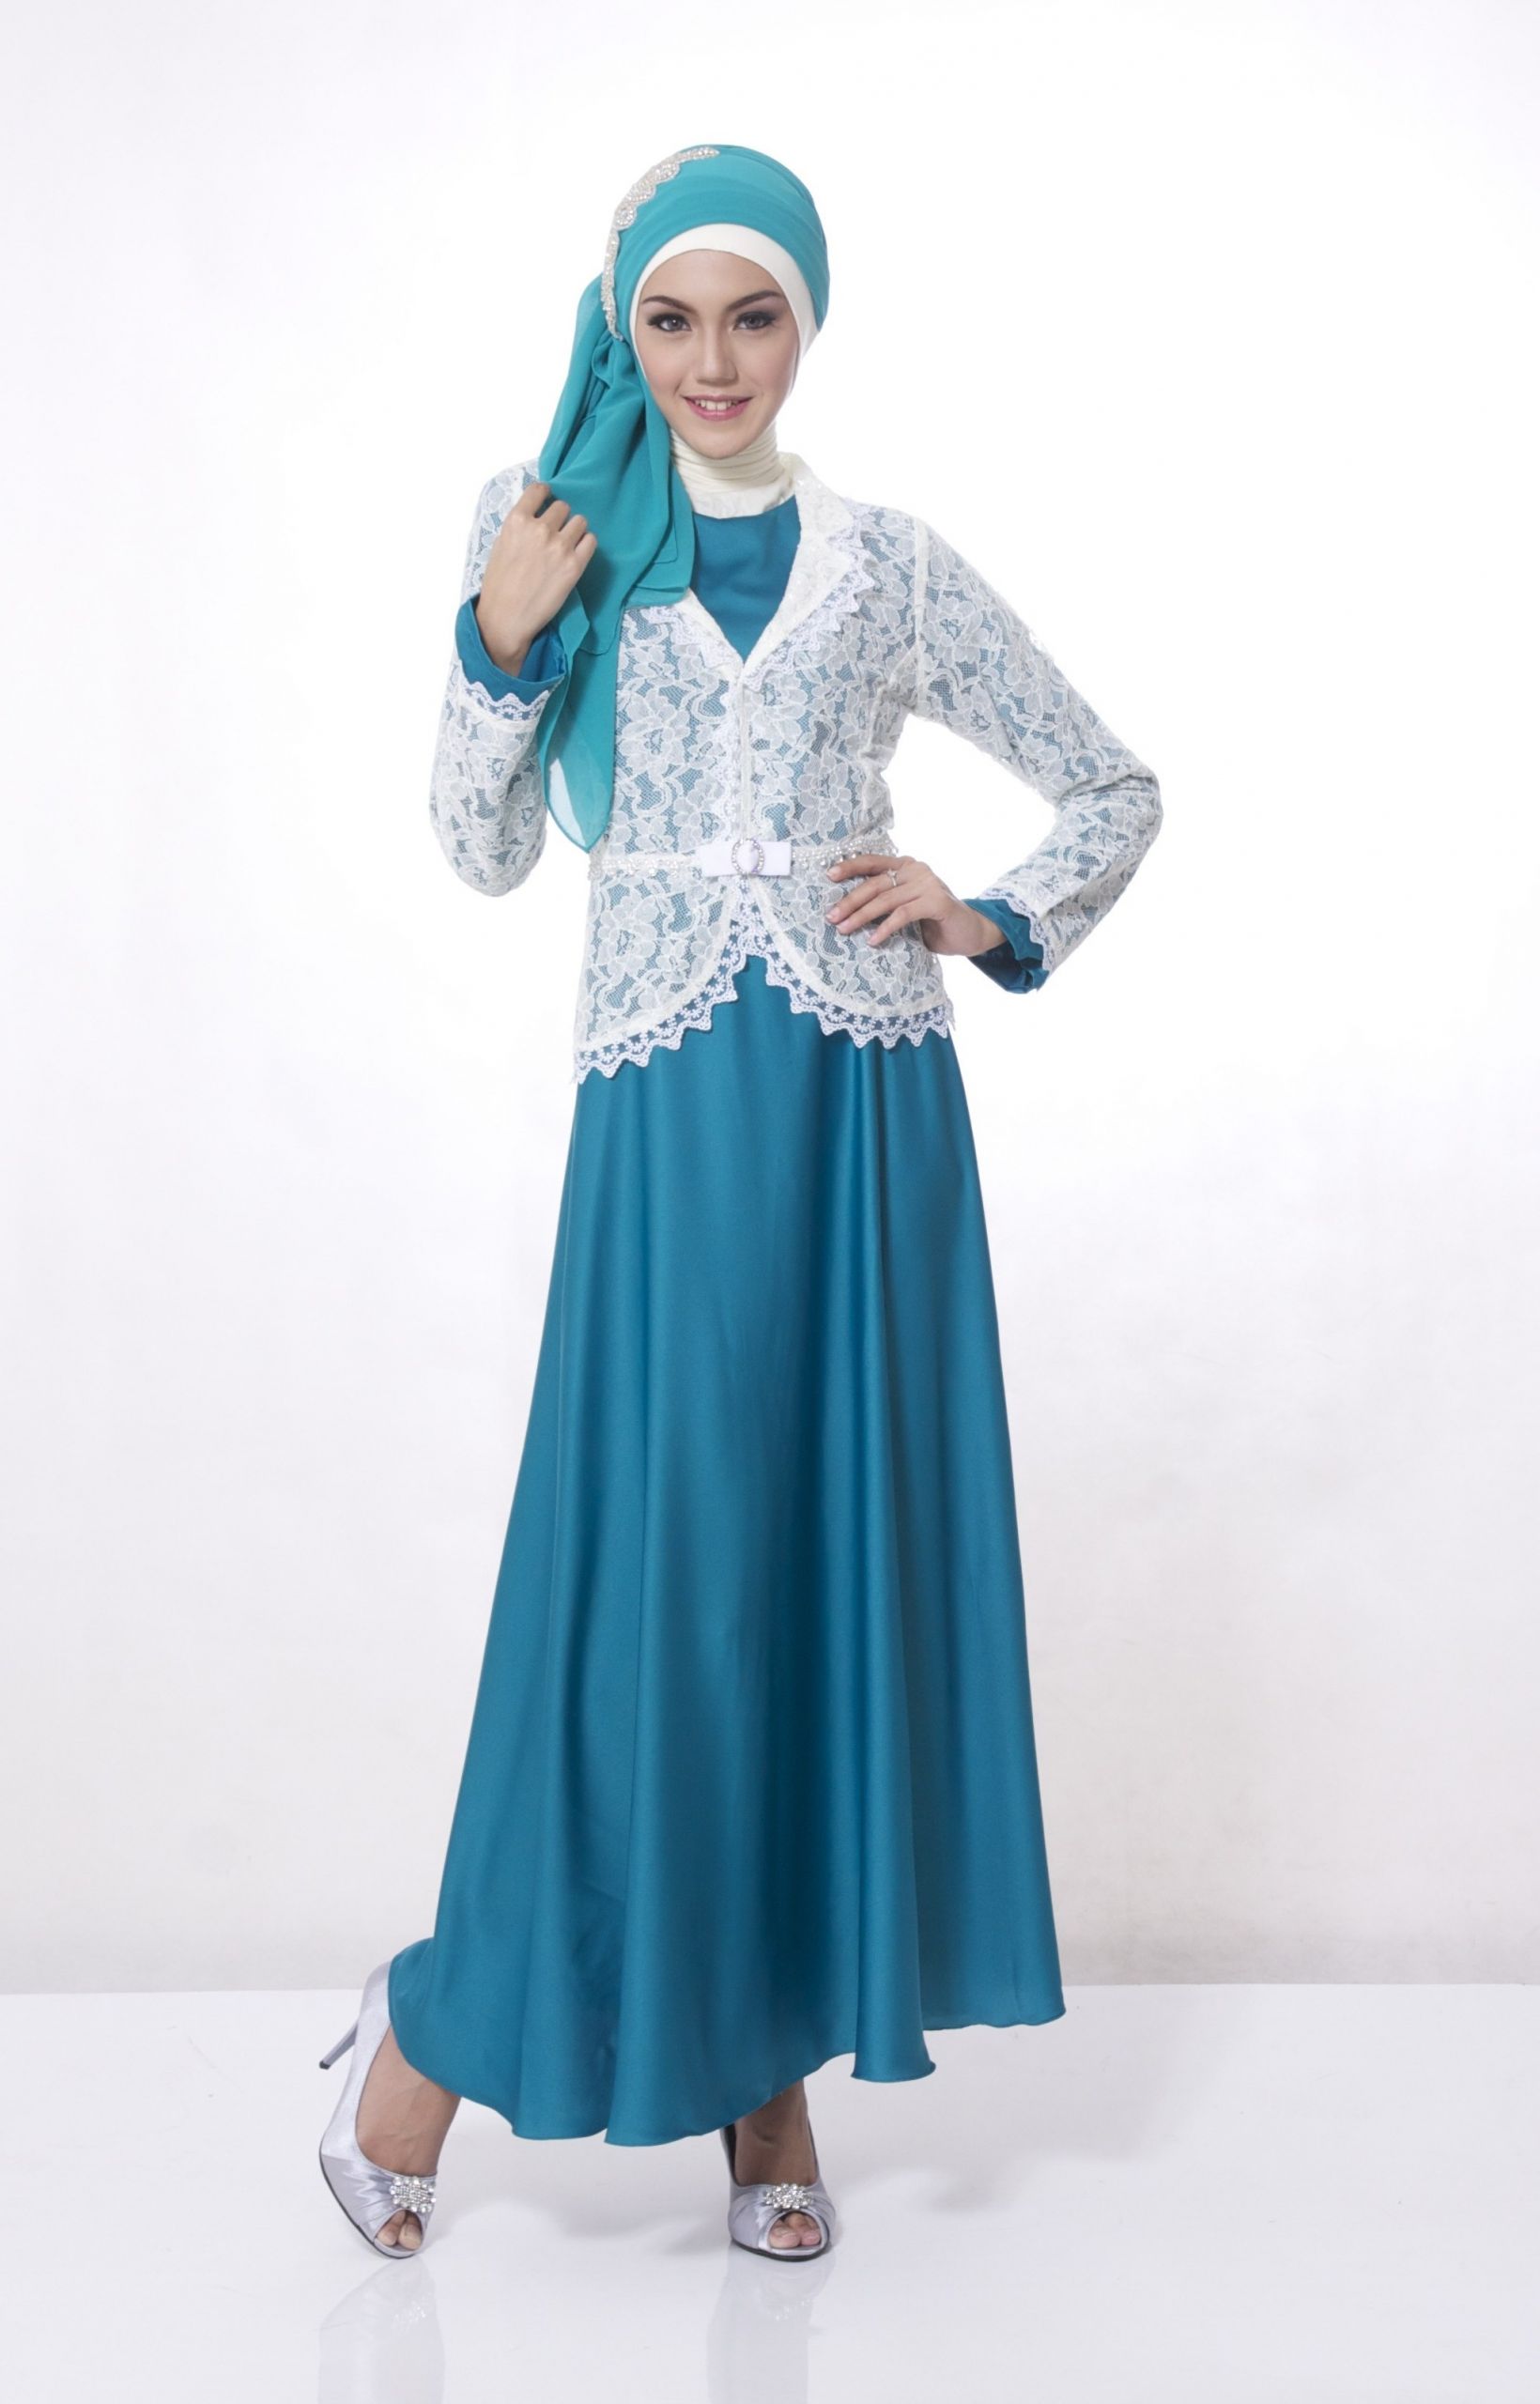 Bentuk Baju Lebaran Wanita Terbaru X8d1 Contoh Desain Baju Muslim Terbaru Di 2015 – Pipitfashion